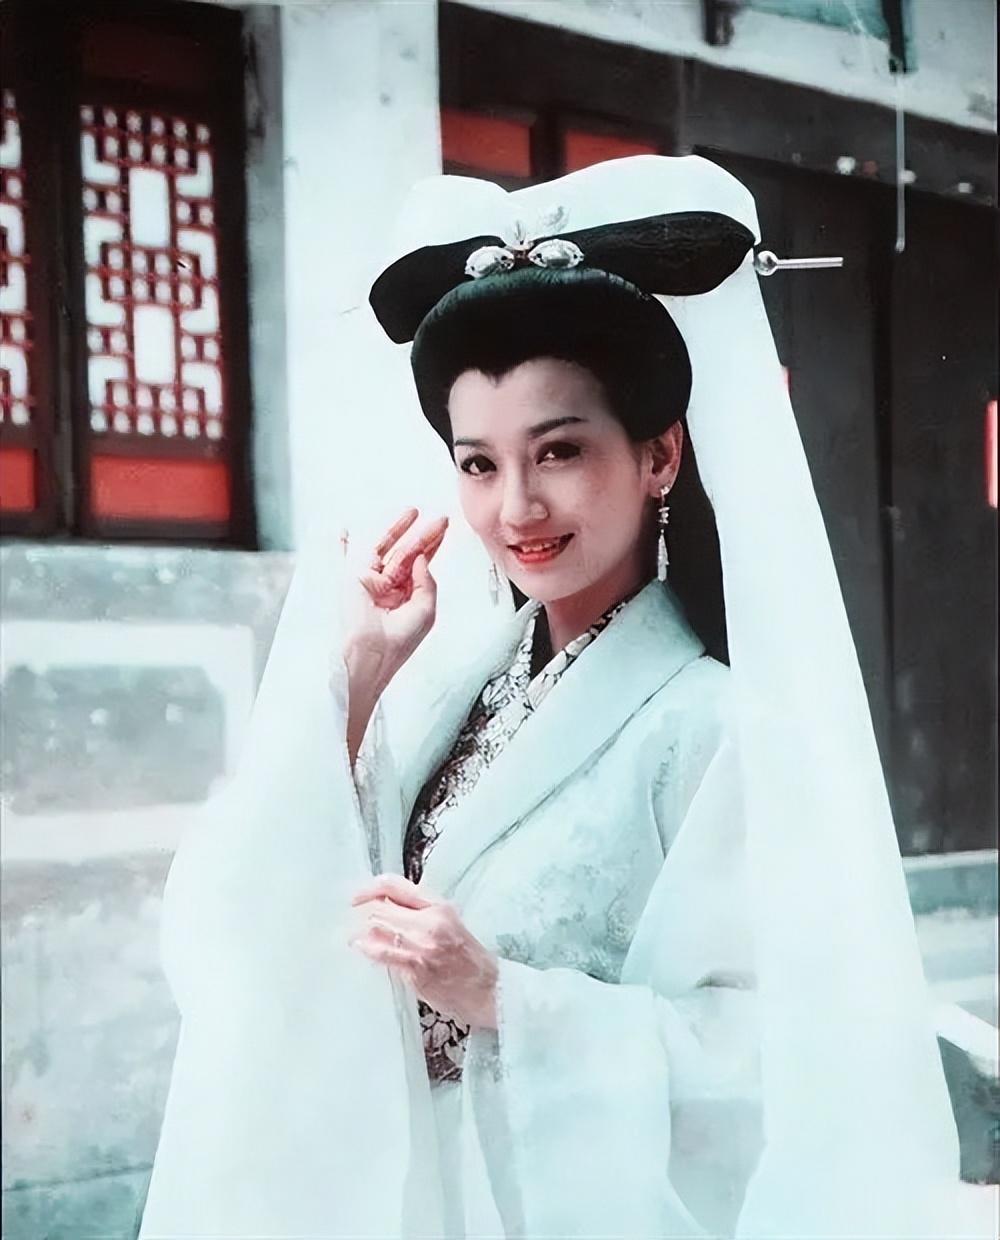 《新白娘子传奇》播出31年,赵雅芝风采不减,许仙状态出人意料